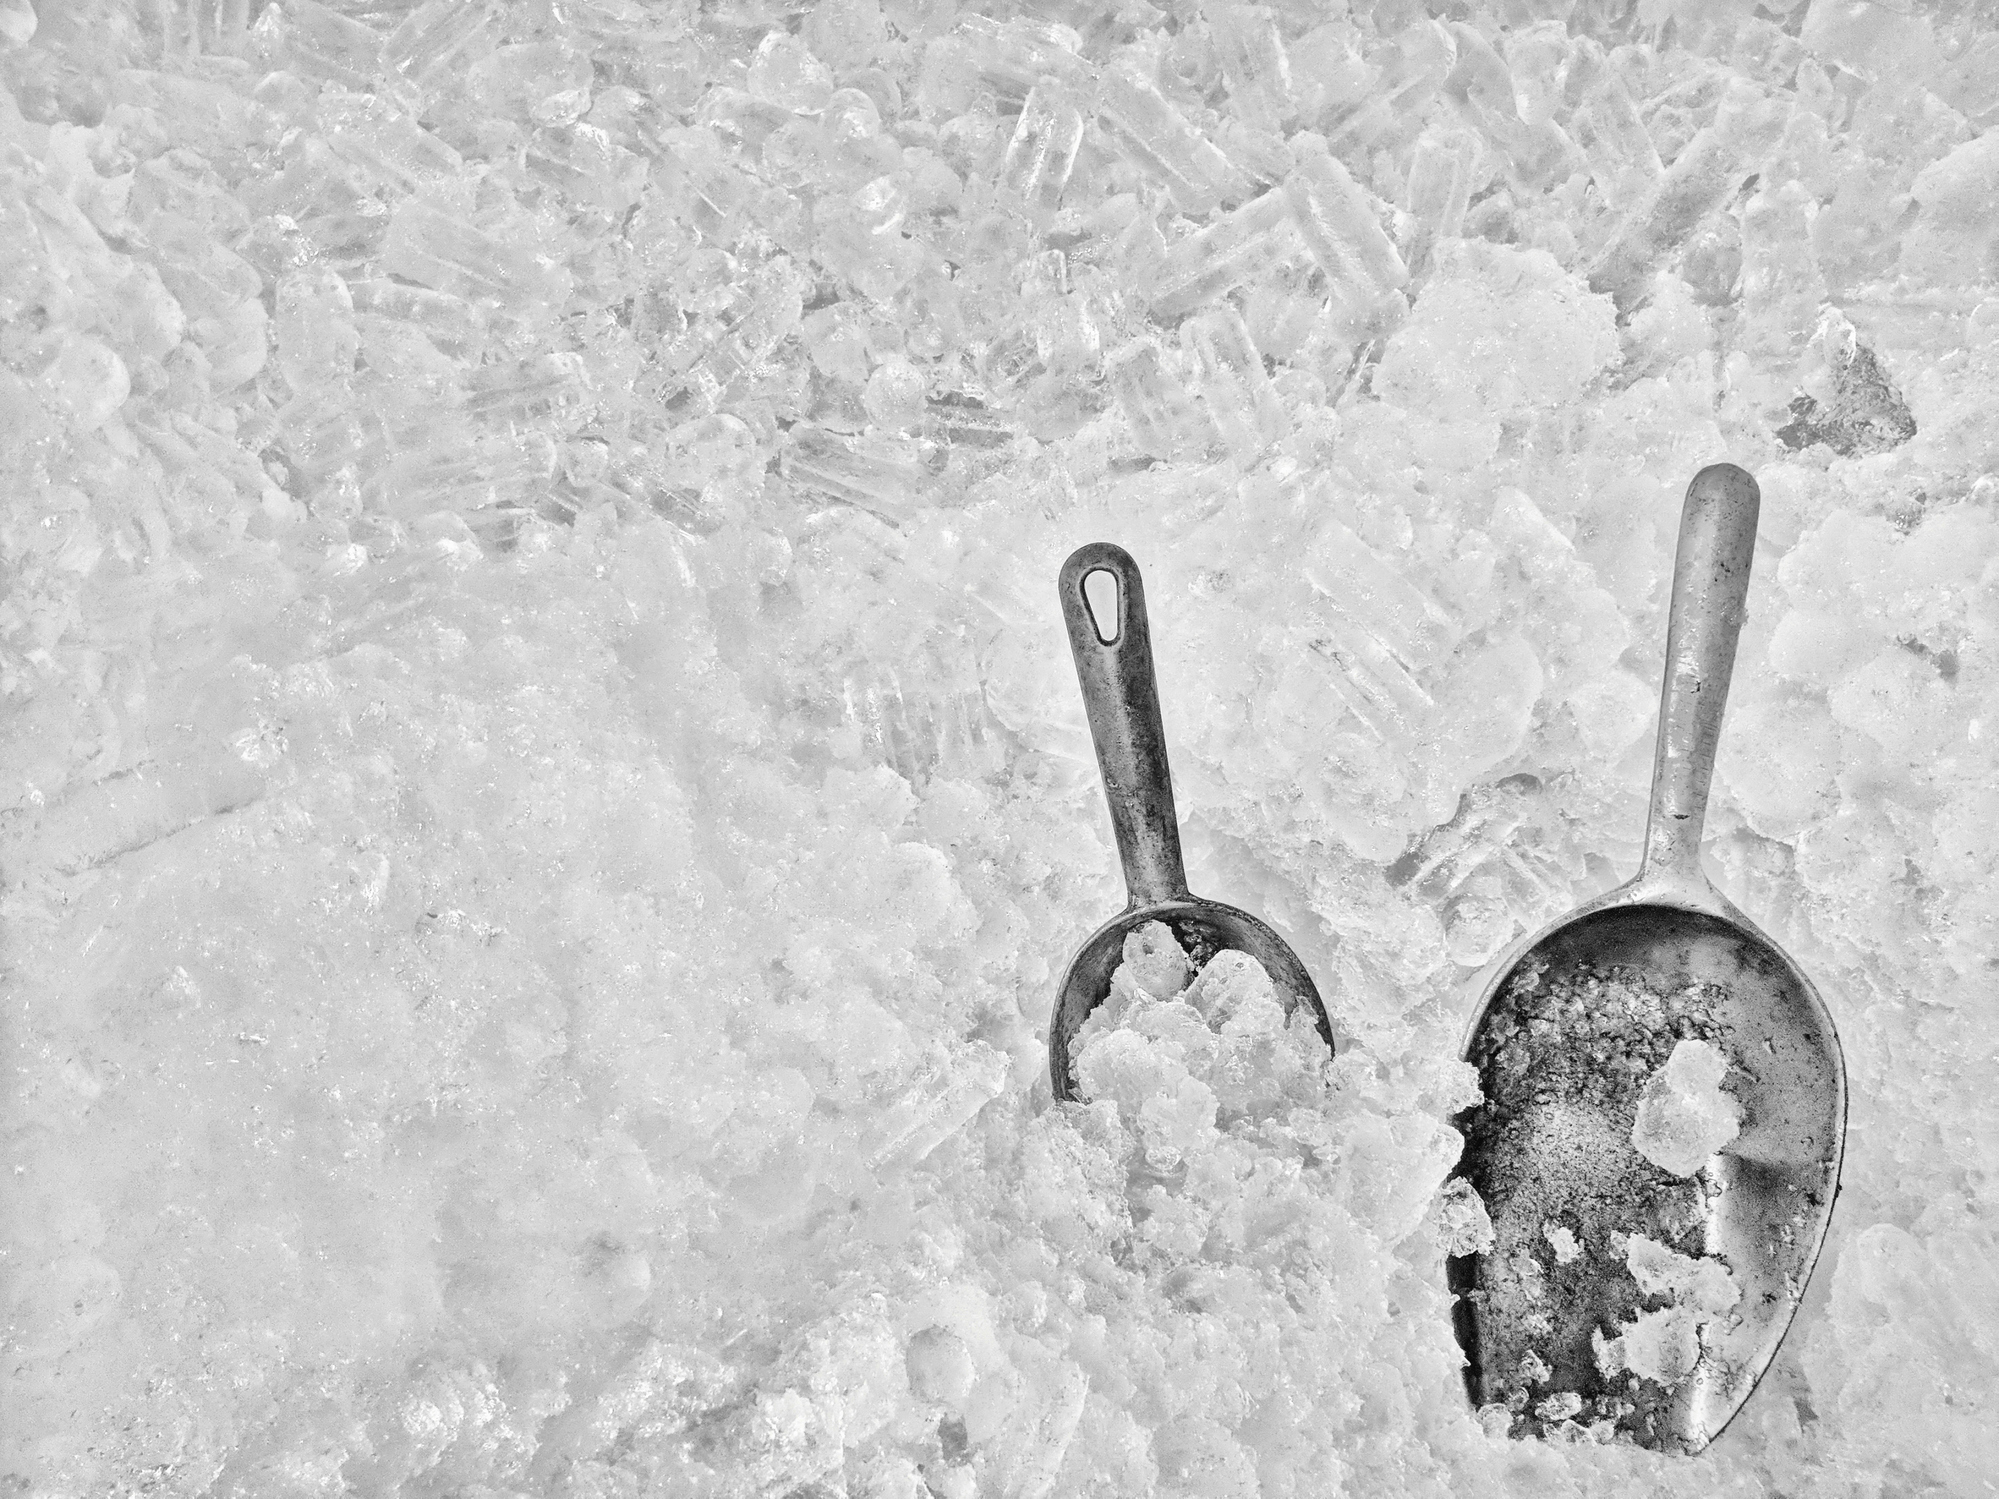 Metal ice scoop in ice bucket